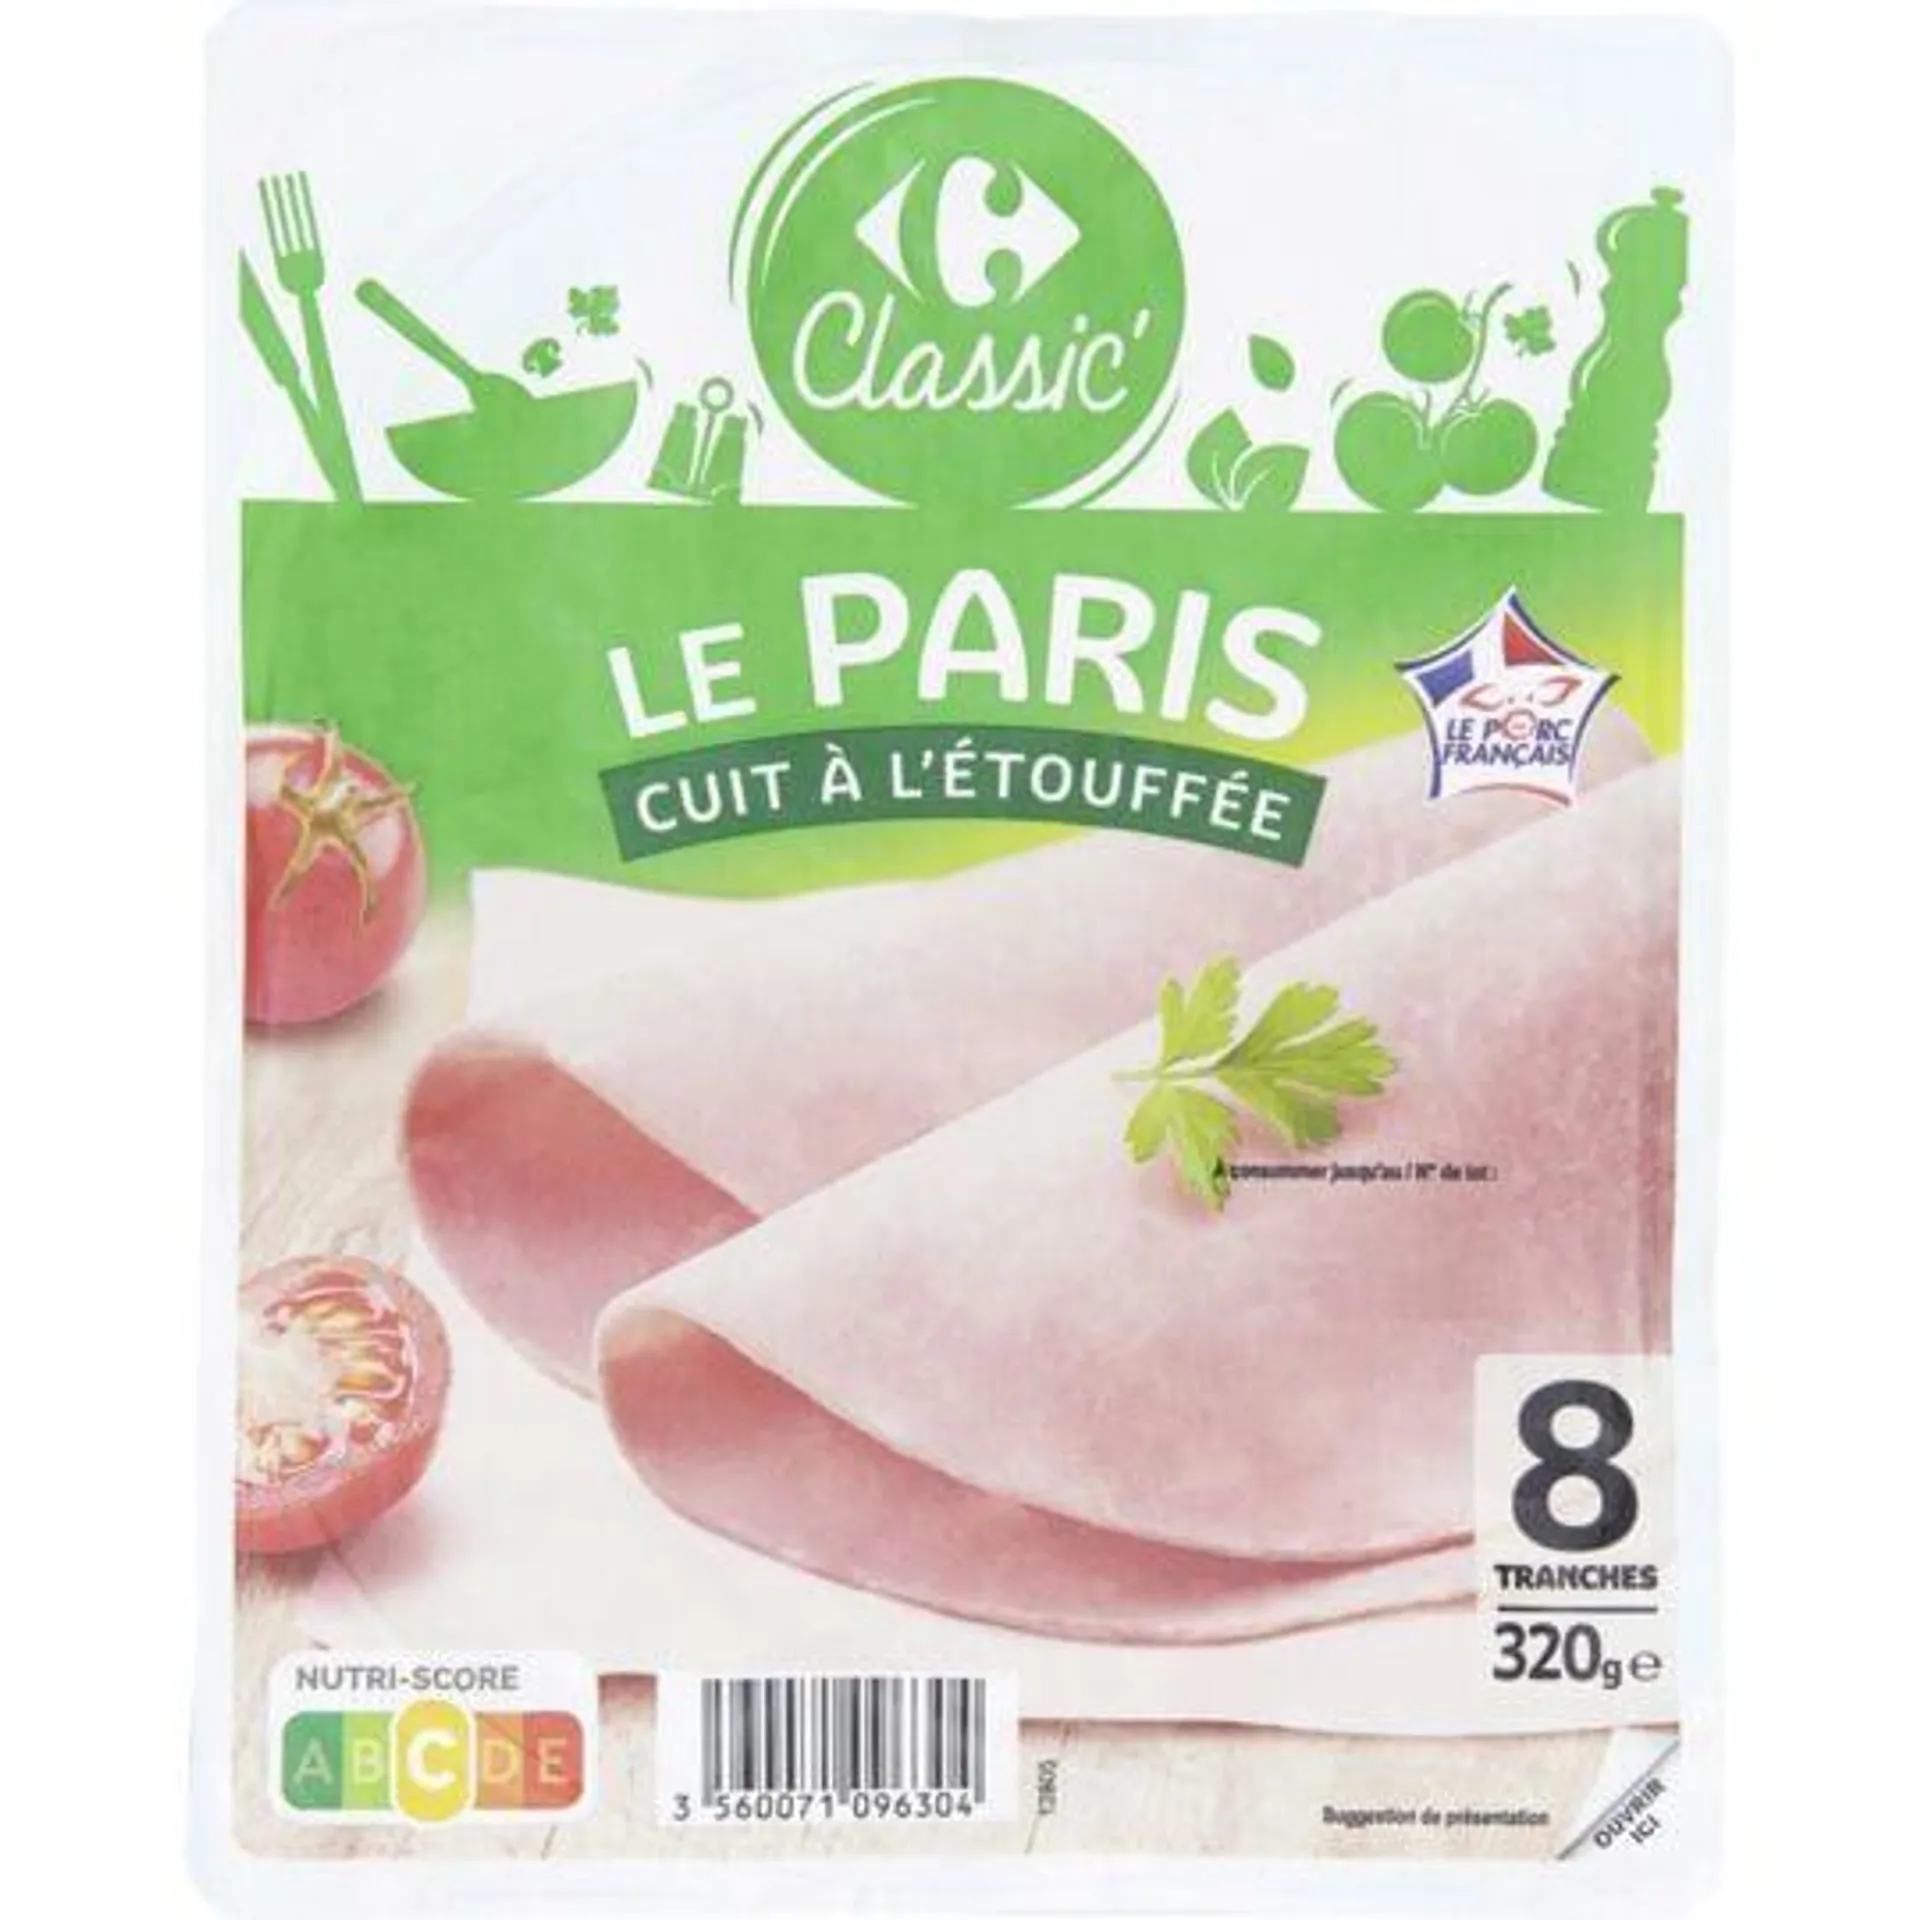 Jambon Le Paris cuit à l'étouffée CARREFOUR CLASSIC'